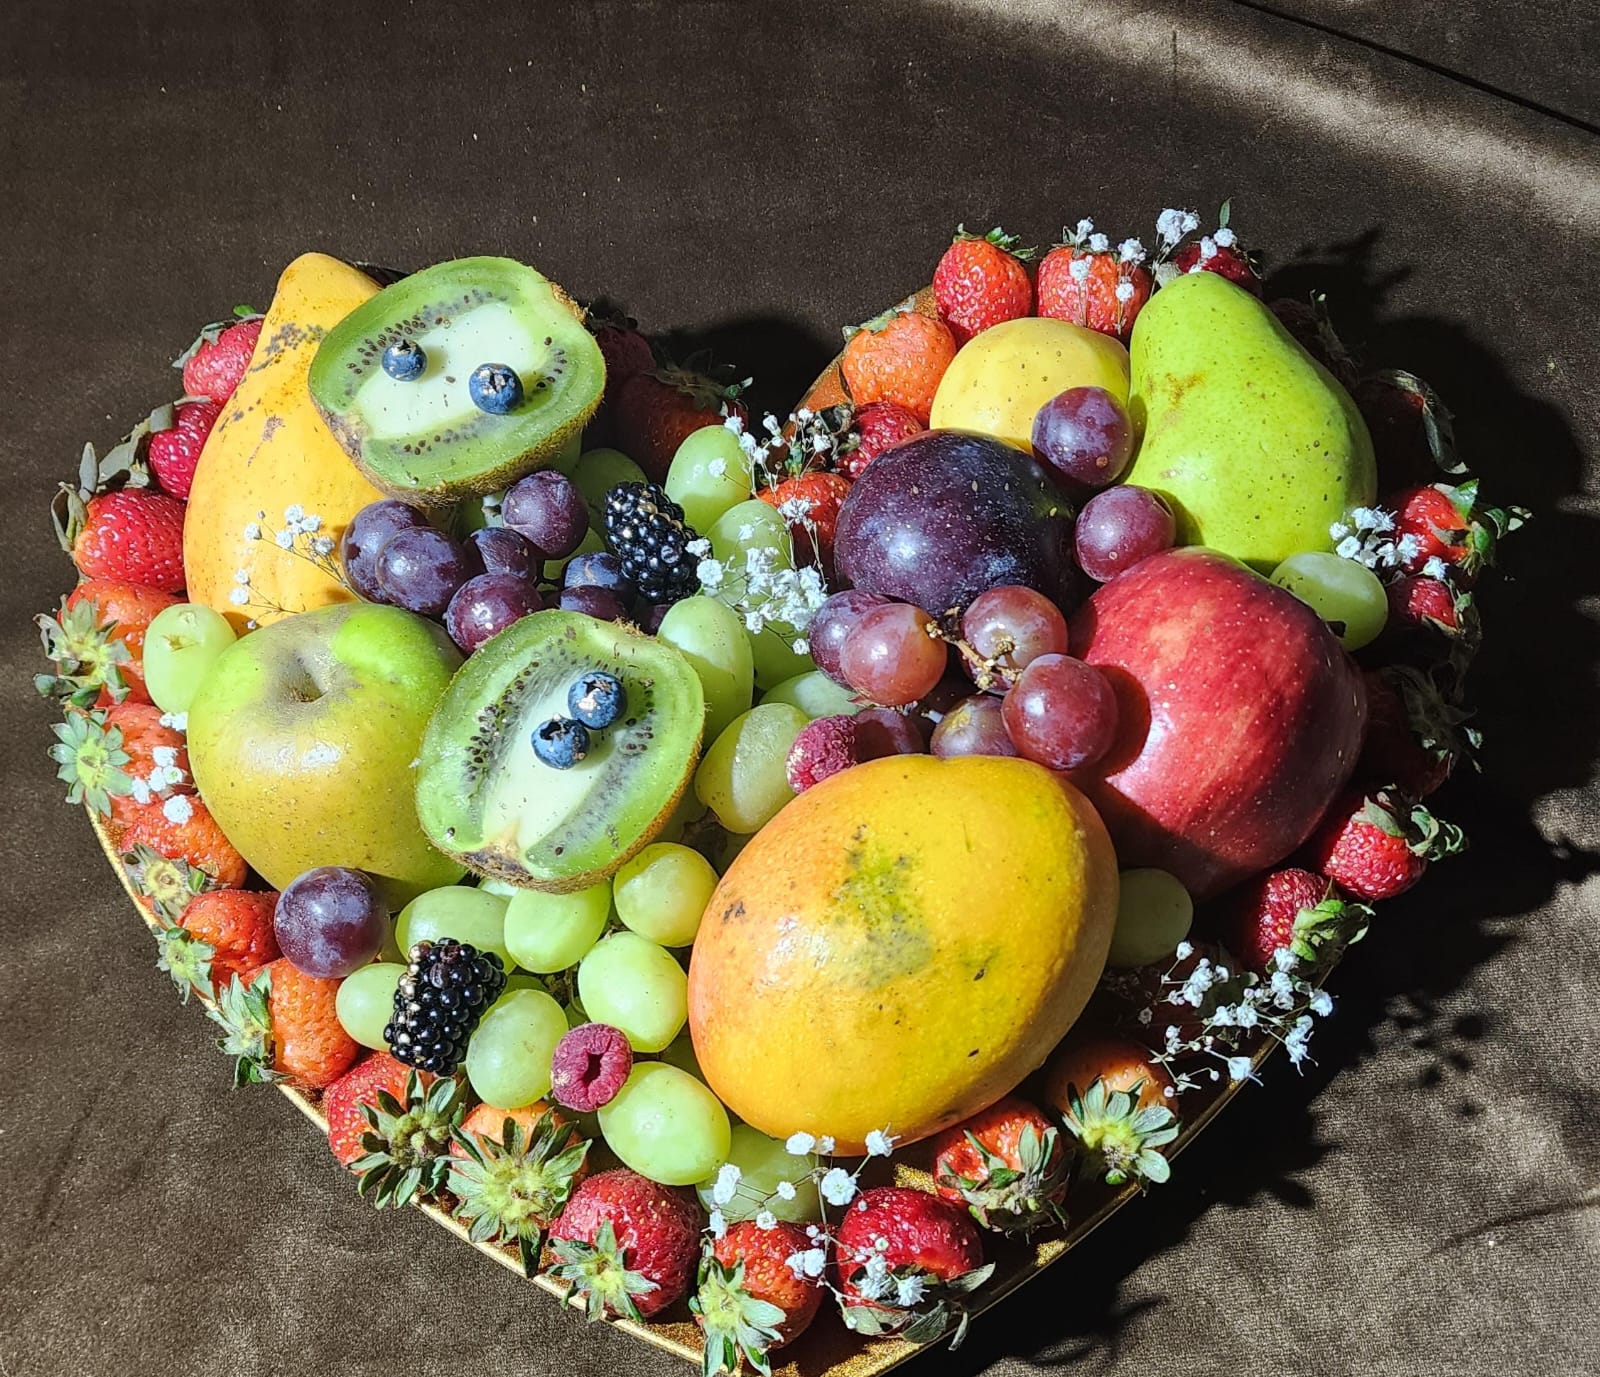 "La Ciencia detrás de Regalar Frutas: Beneficios Psicológicos y Físicos"